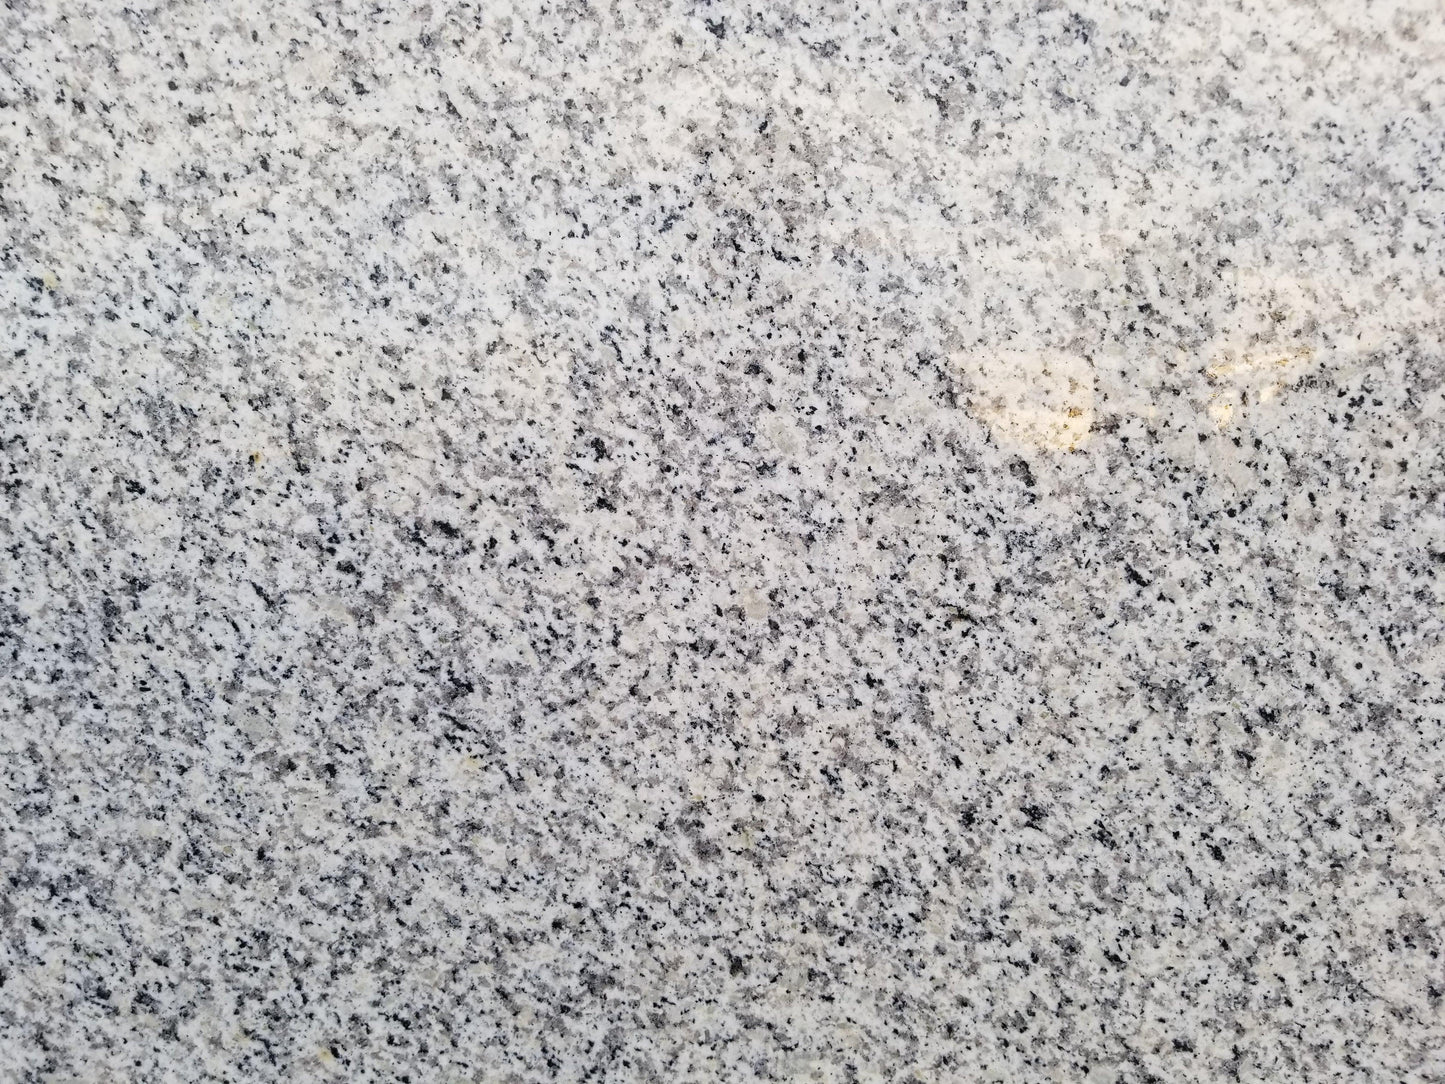 2cm, brown, Granite, remnants Granite Remnant